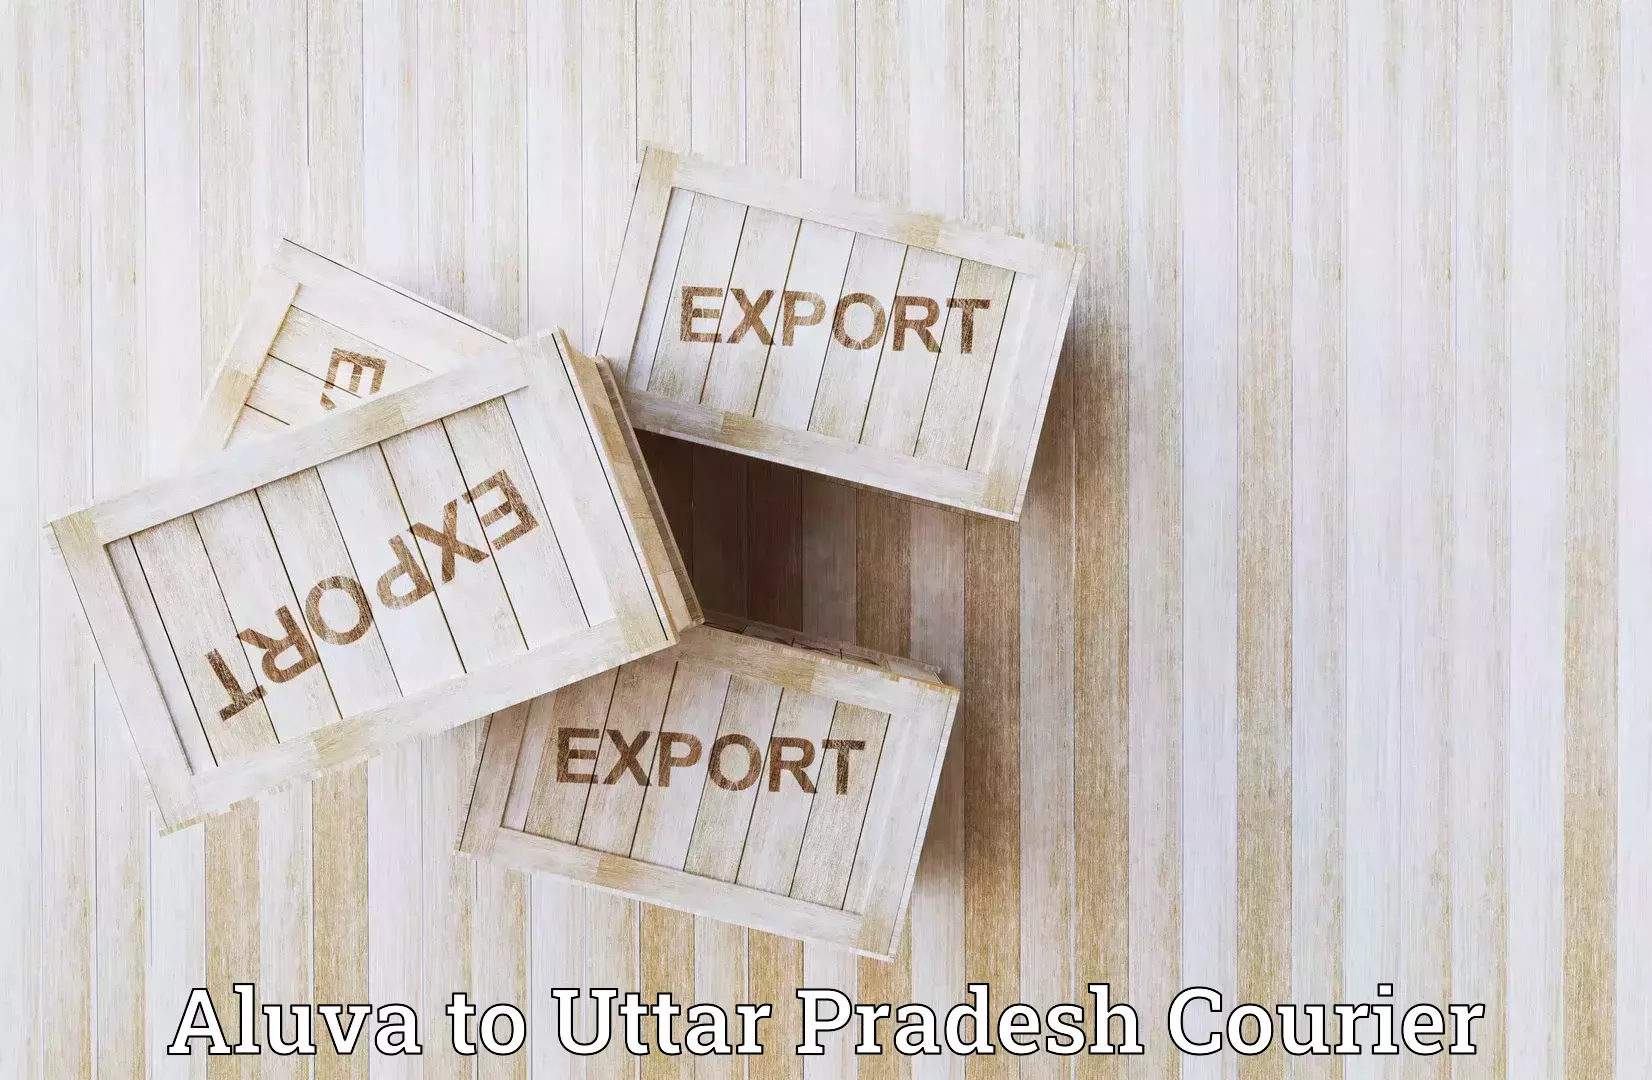 Efficient parcel transport Aluva to Uttar Pradesh